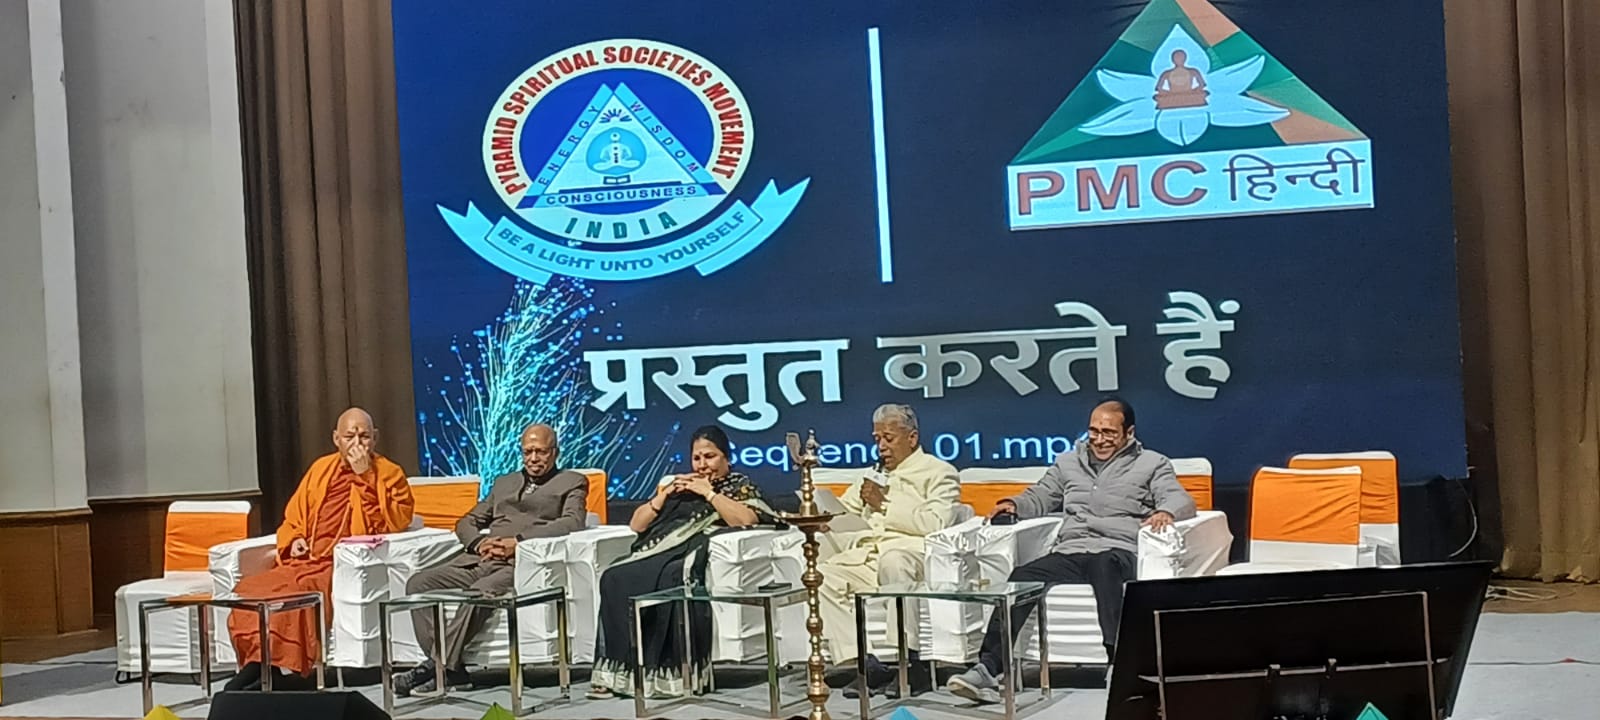 पिरामिड मेडिटेशन चैनल (पीएमसी) ने लॉन्च किया दुनिया का पहला आध्यात्मिक विज्ञान और जीवन शैली चैनल हिंदी में